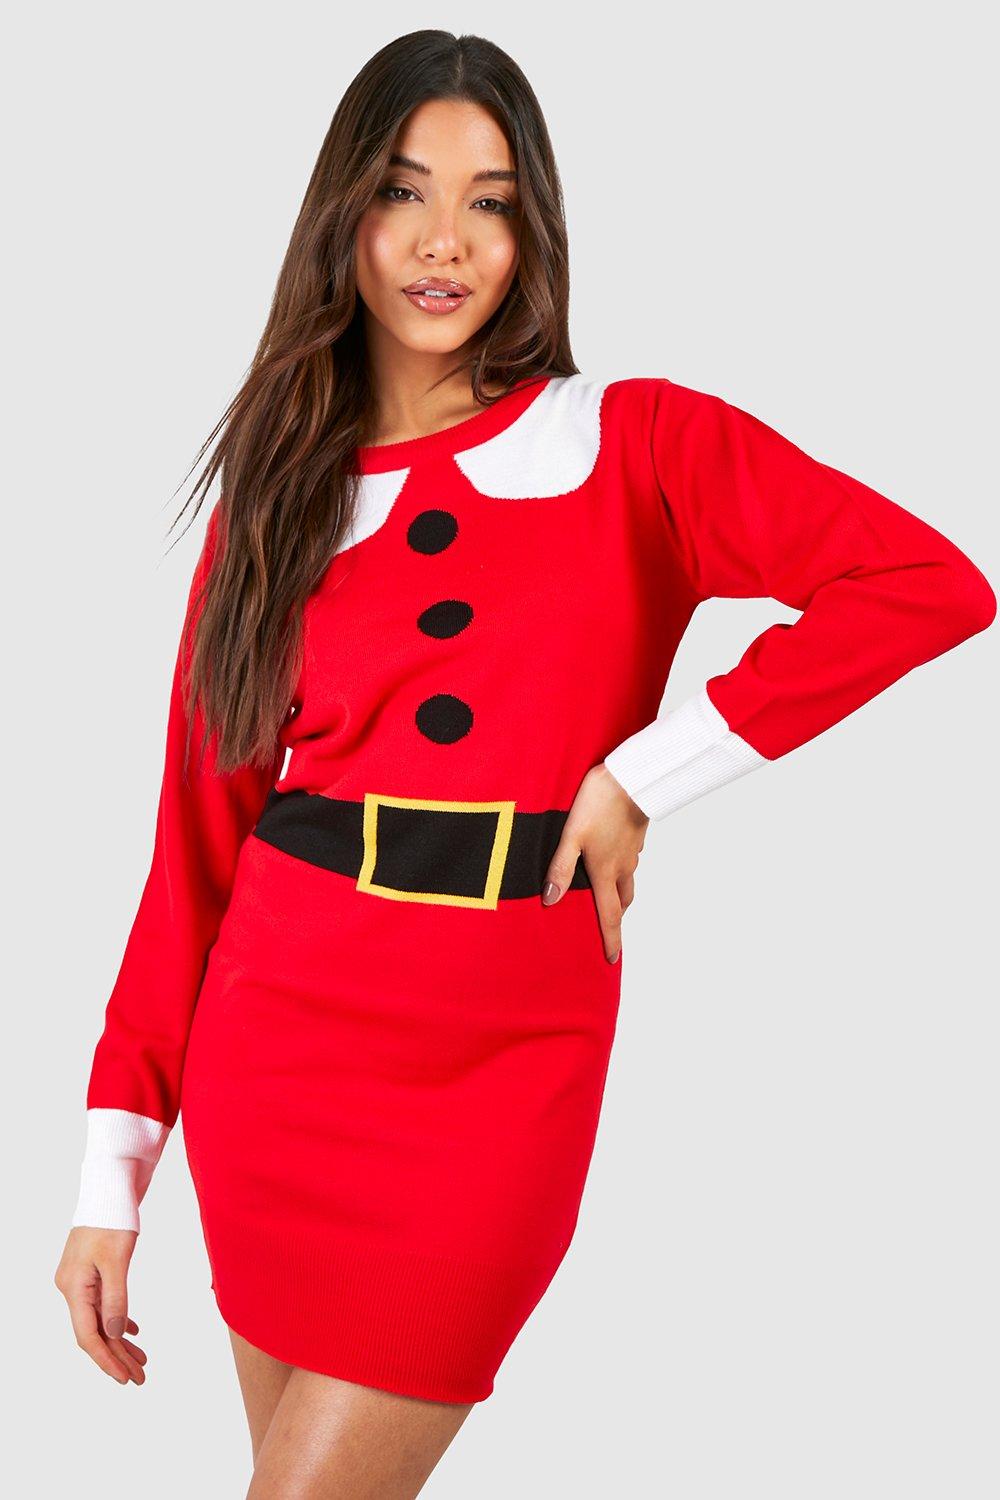 Mrs Claus Christmas Jumper Dress